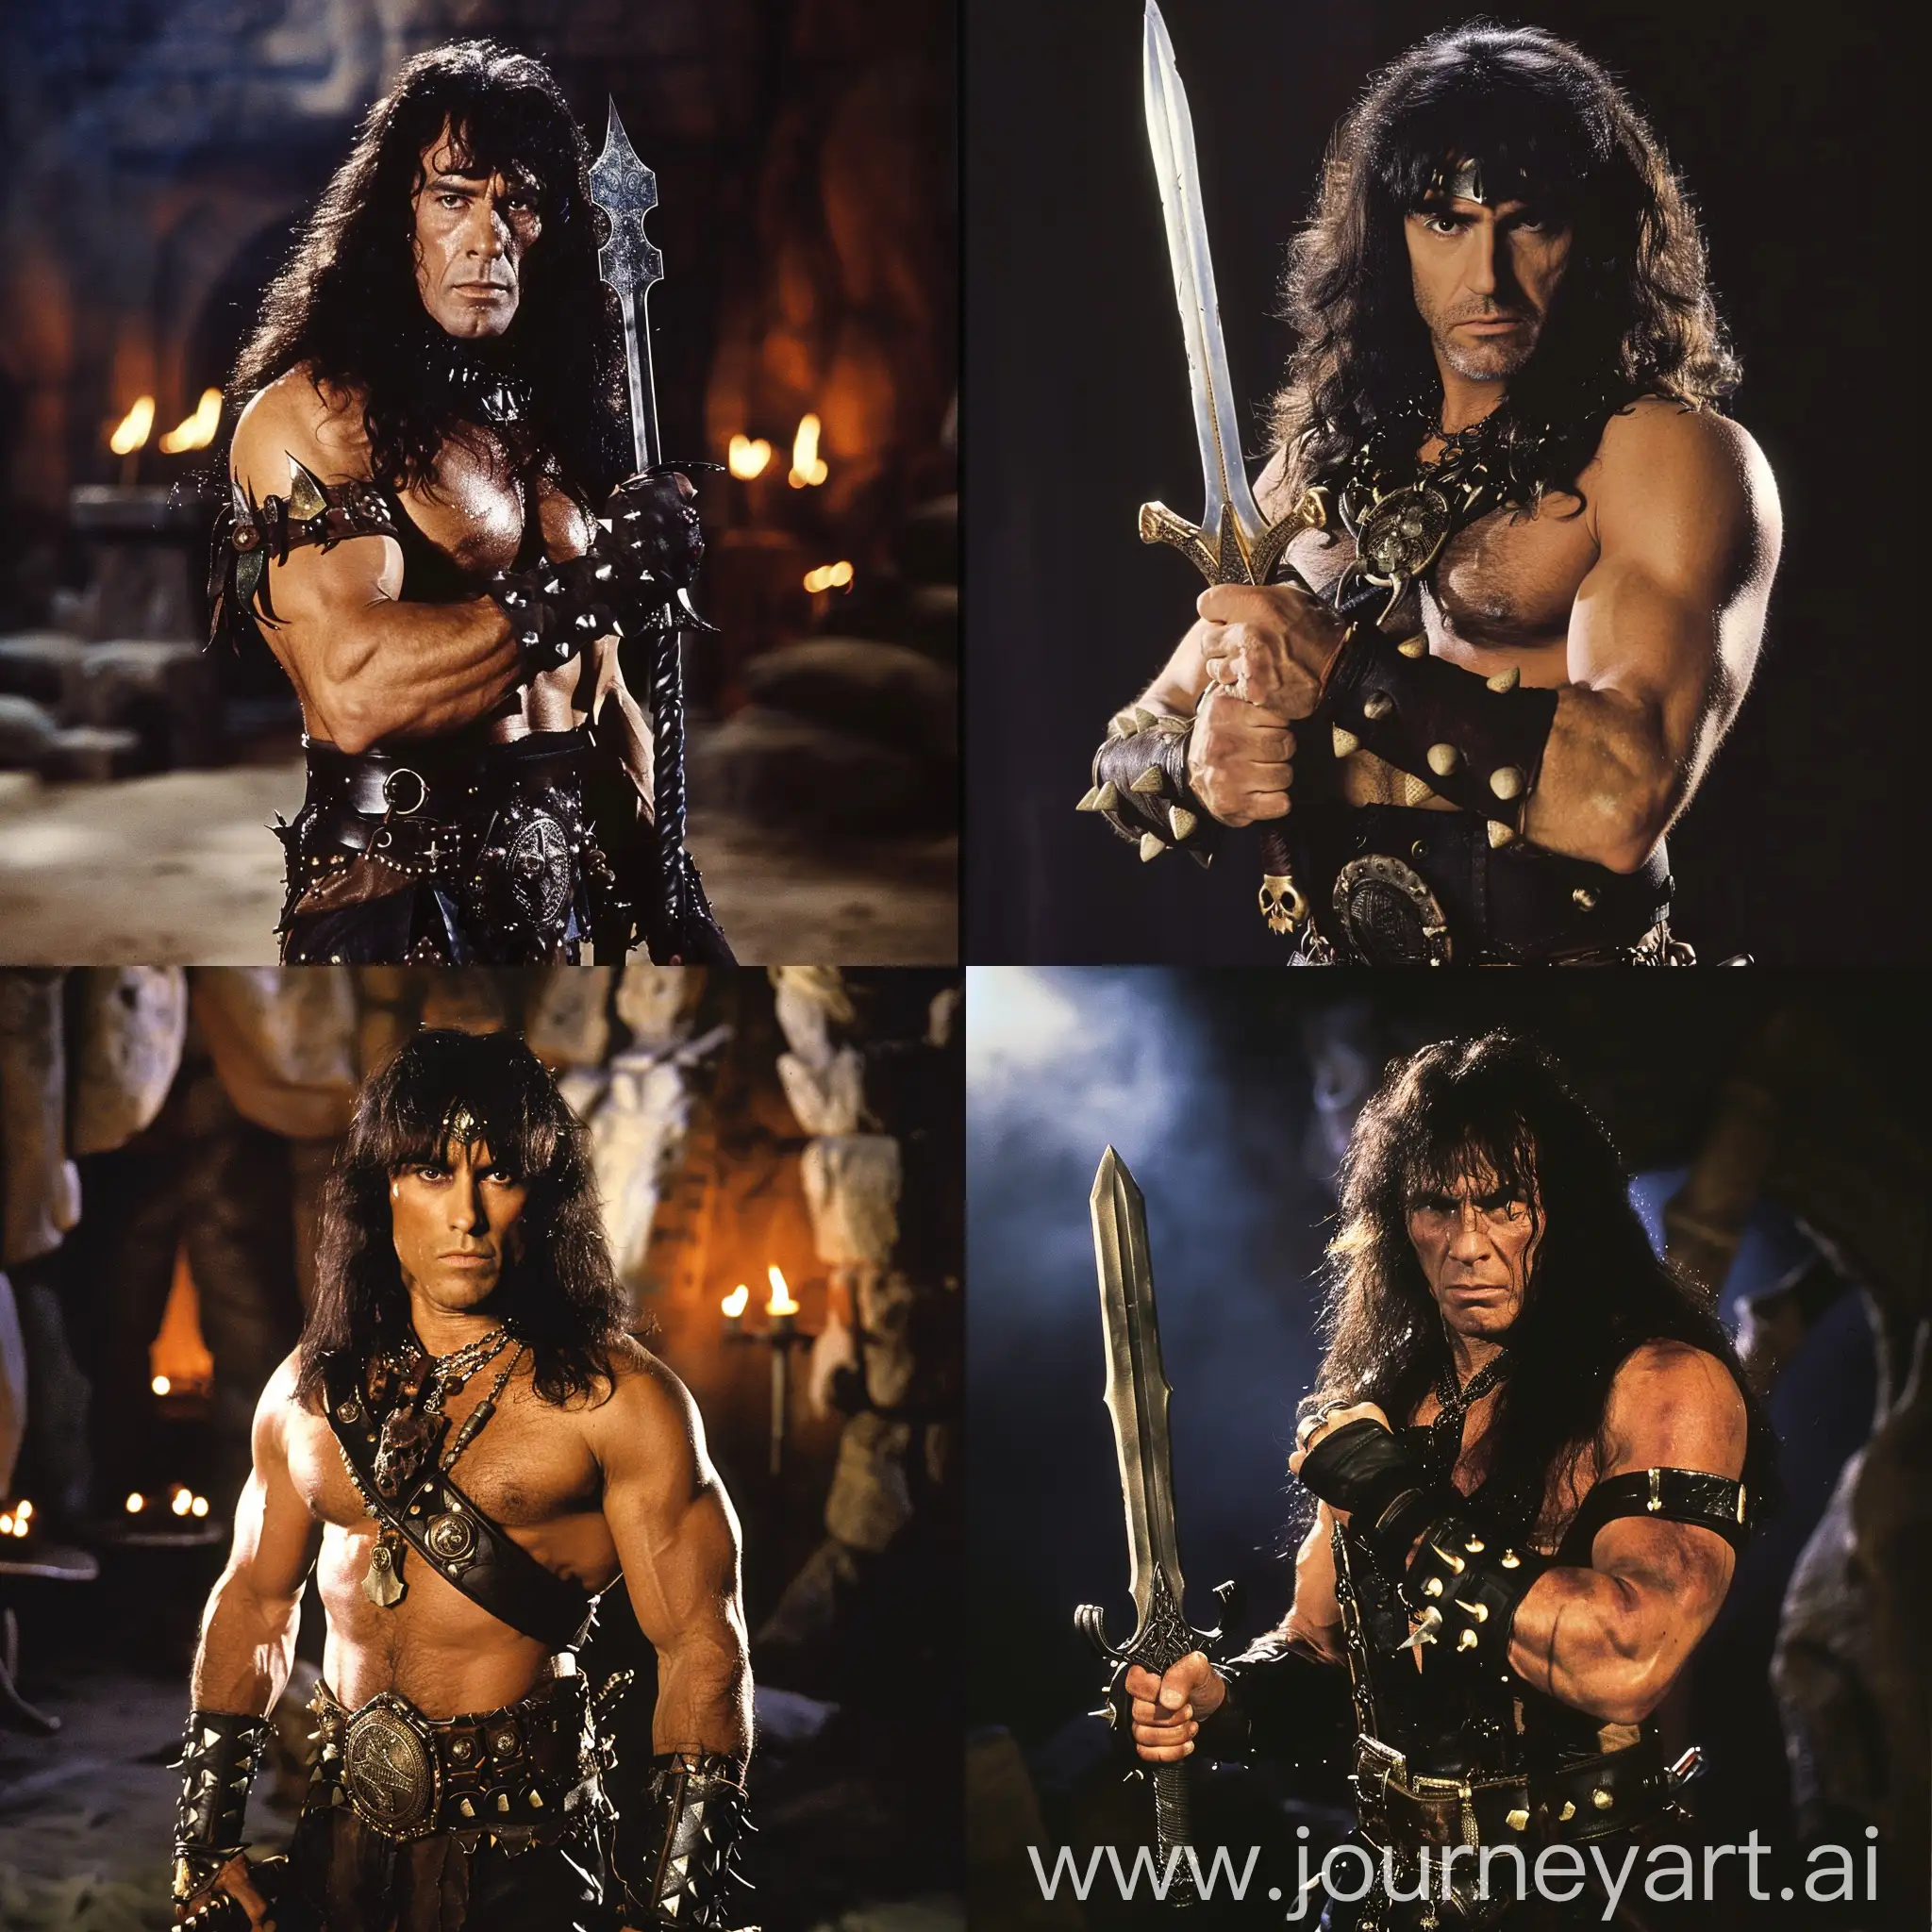 Ronnie James Dio as Conan the Barbarian